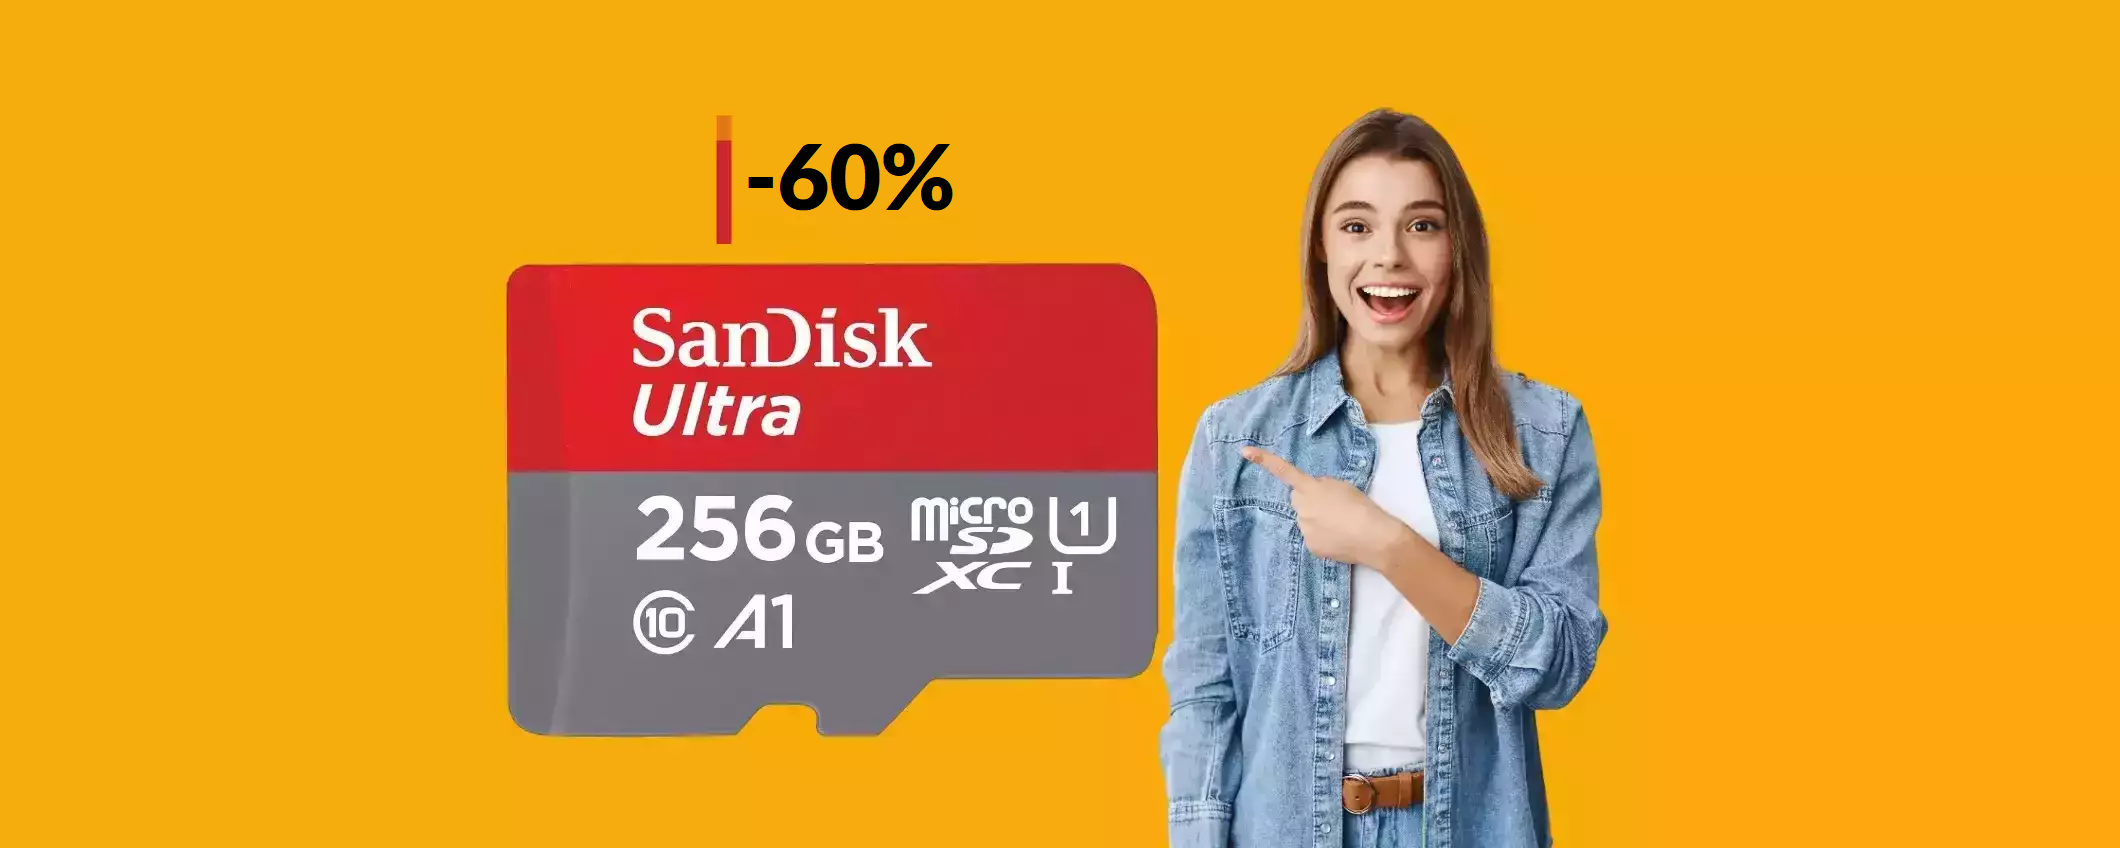 MicroSD SanDisk 256GB a prezzo clamorosamente basso (25€)